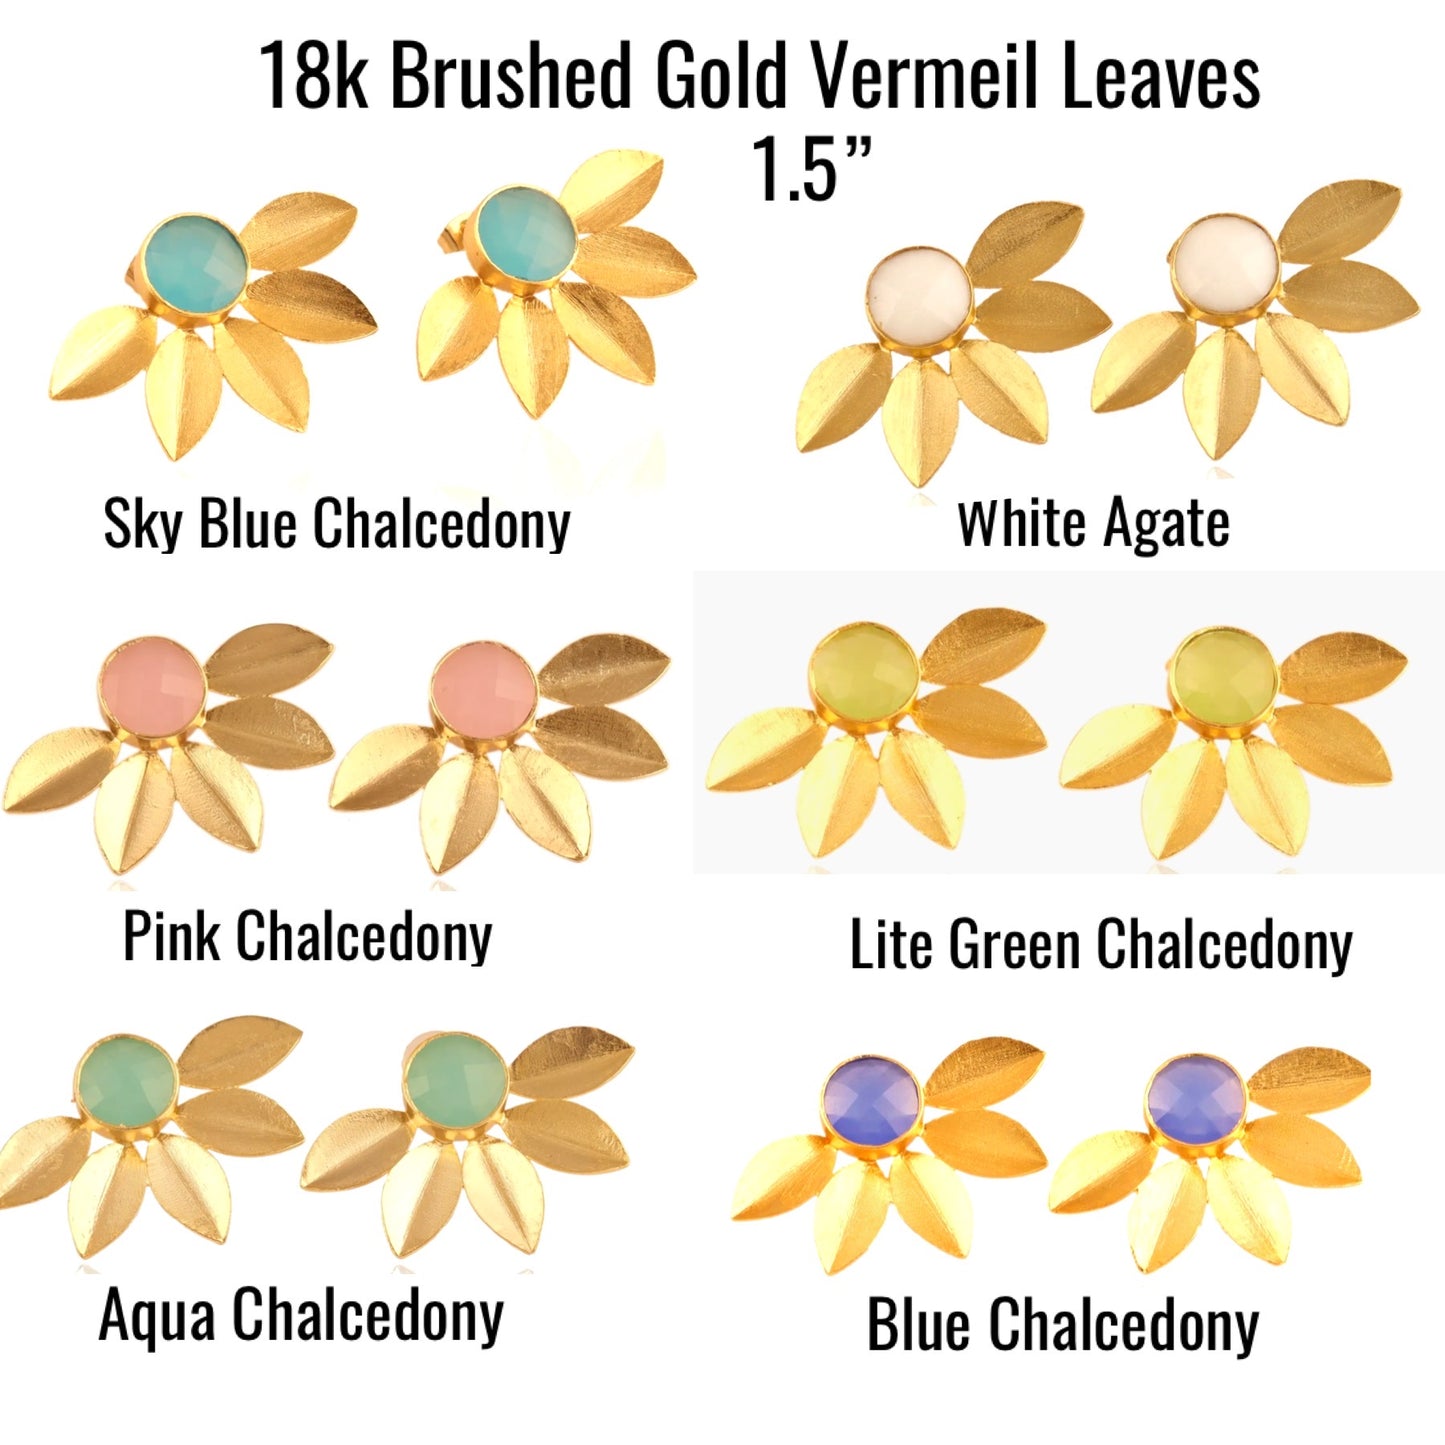 Leaf Design 18k Brushed Gold Vermeil Chalcedony Gemstone Studs